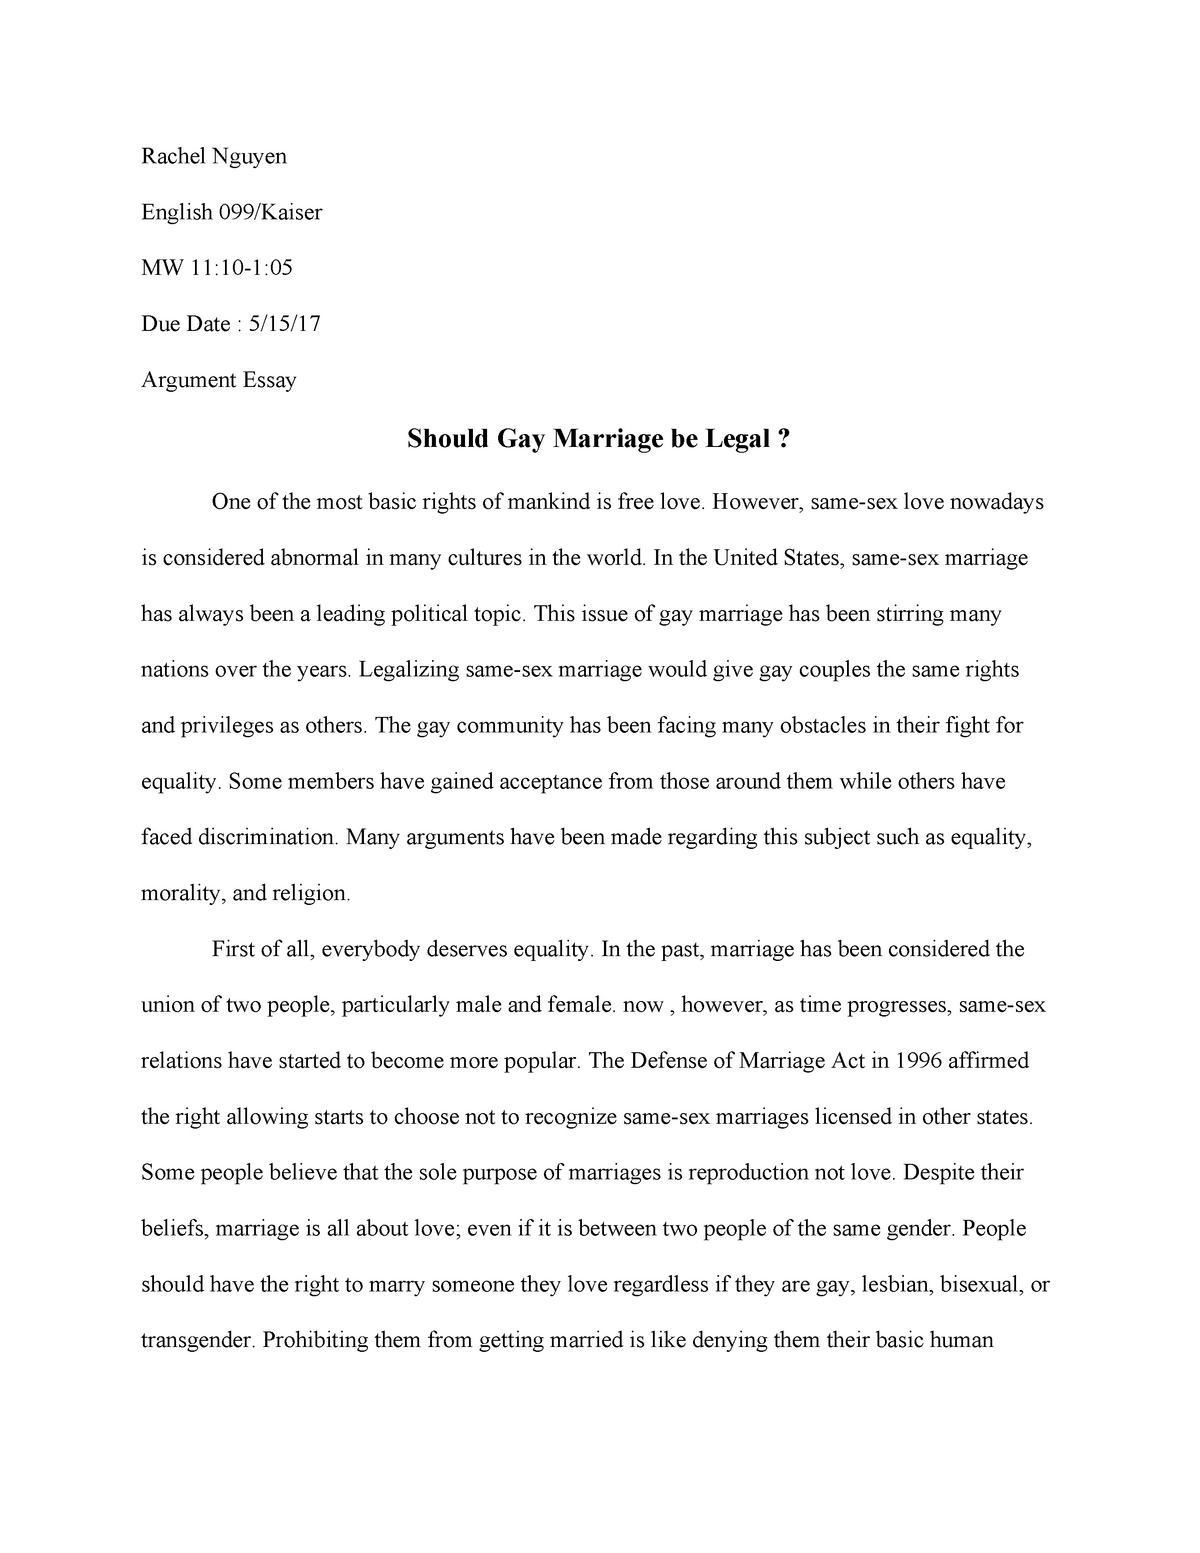 Same sex marriage argumentative essay pay to write an essay